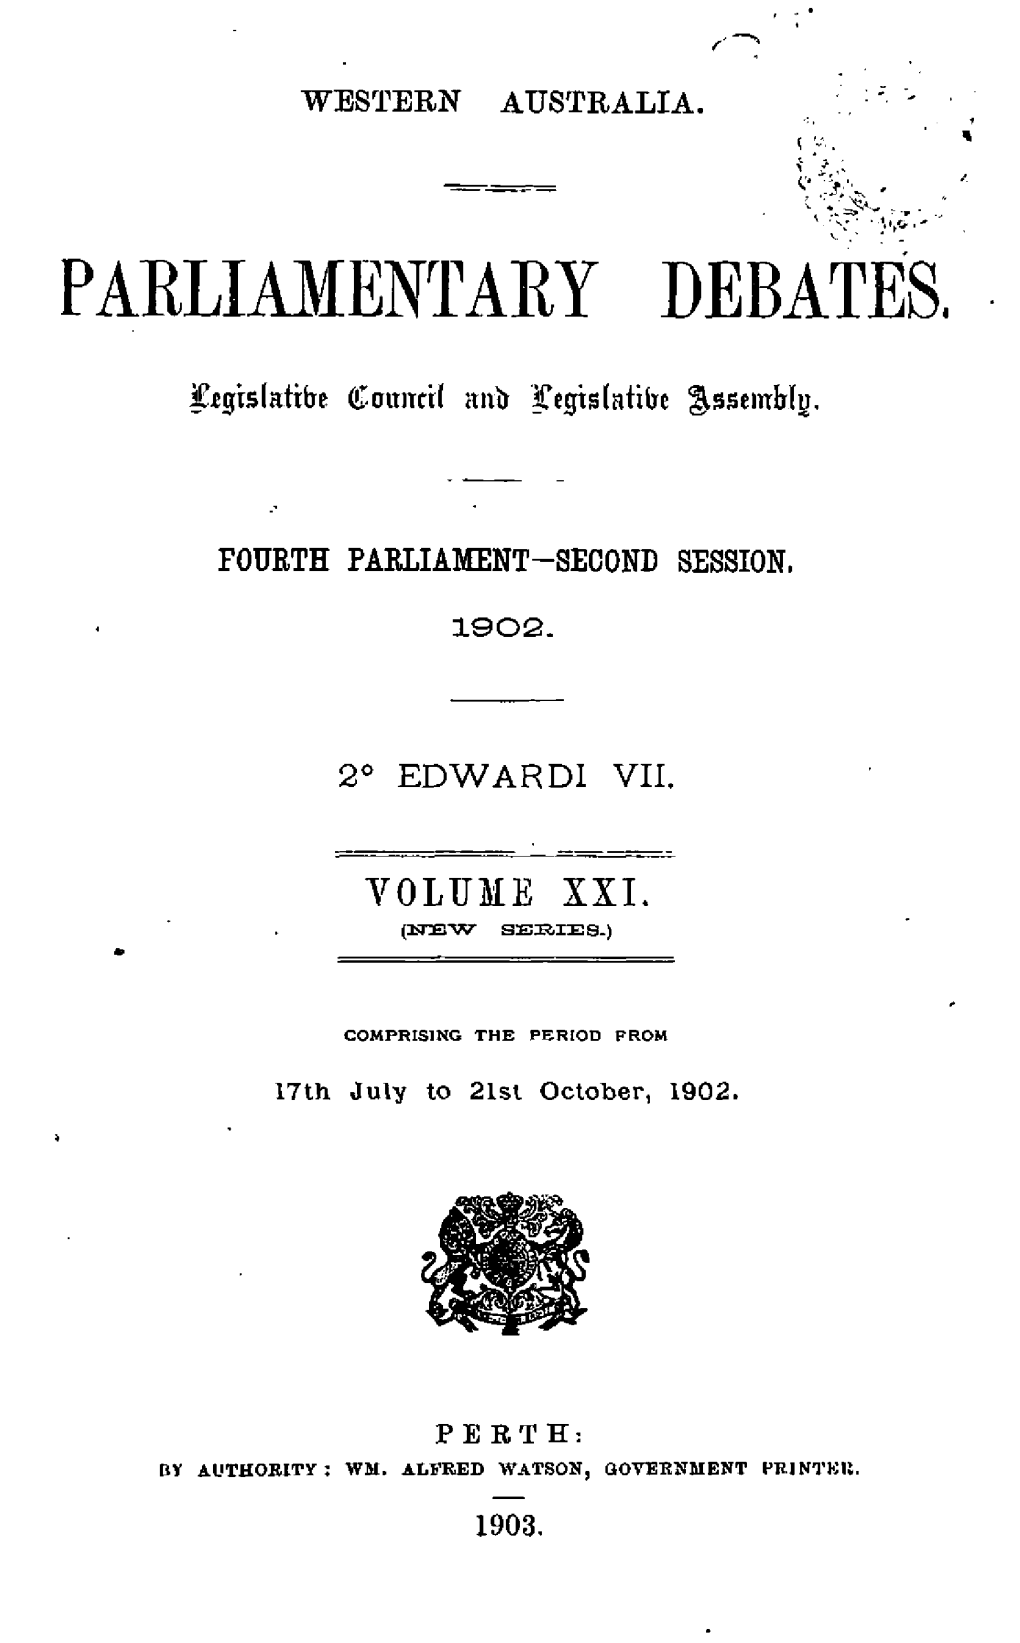 Hansard Index 1902